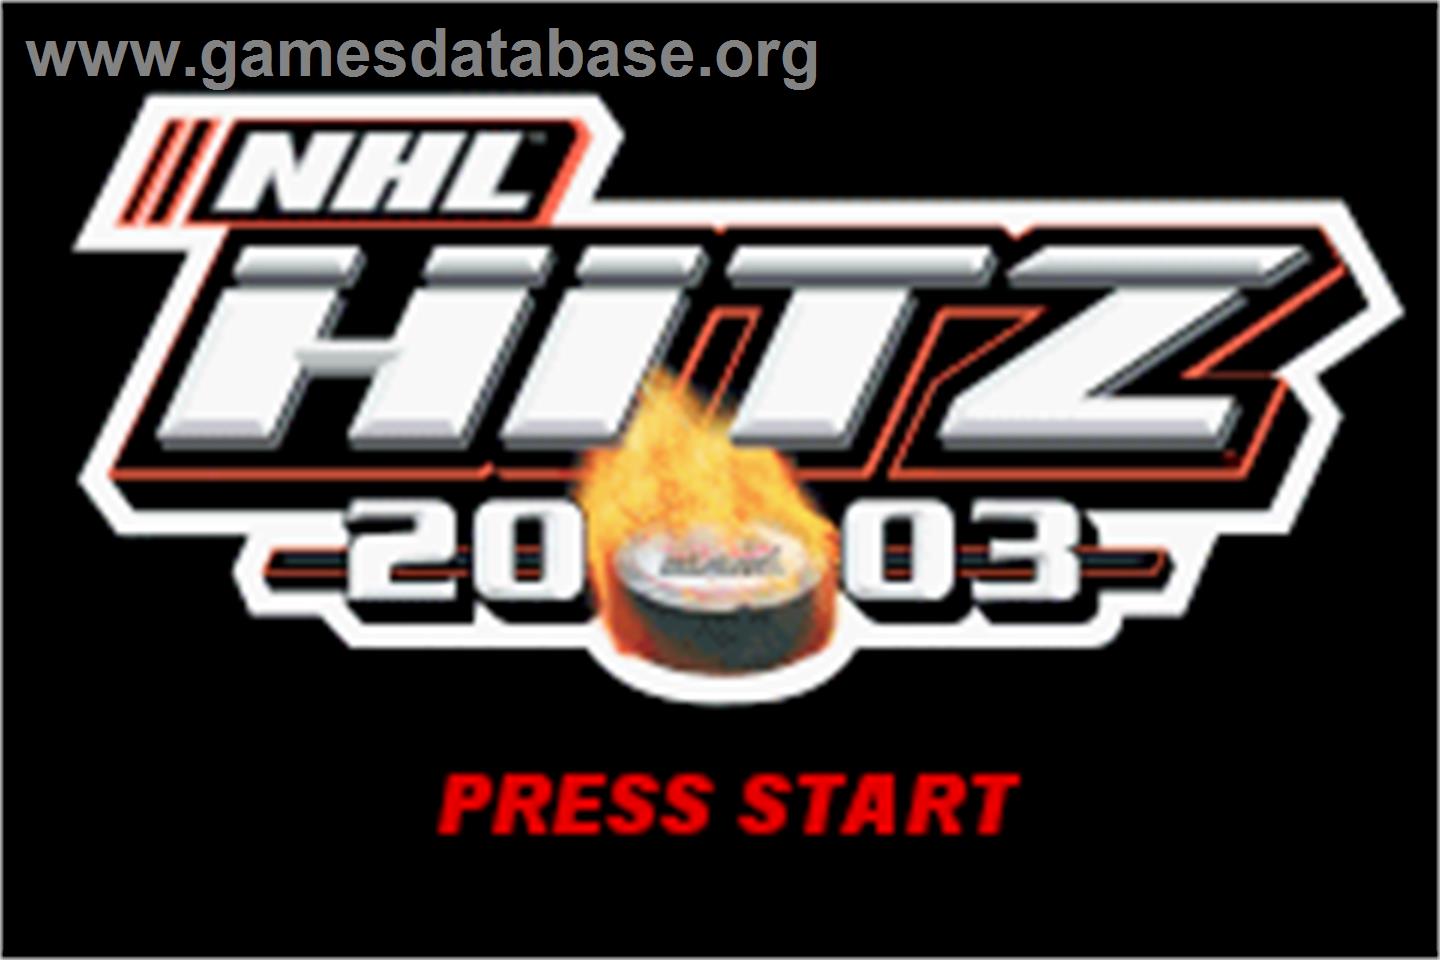 NHL Hitz 20-03 - Nintendo Game Boy Advance - Artwork - Title Screen